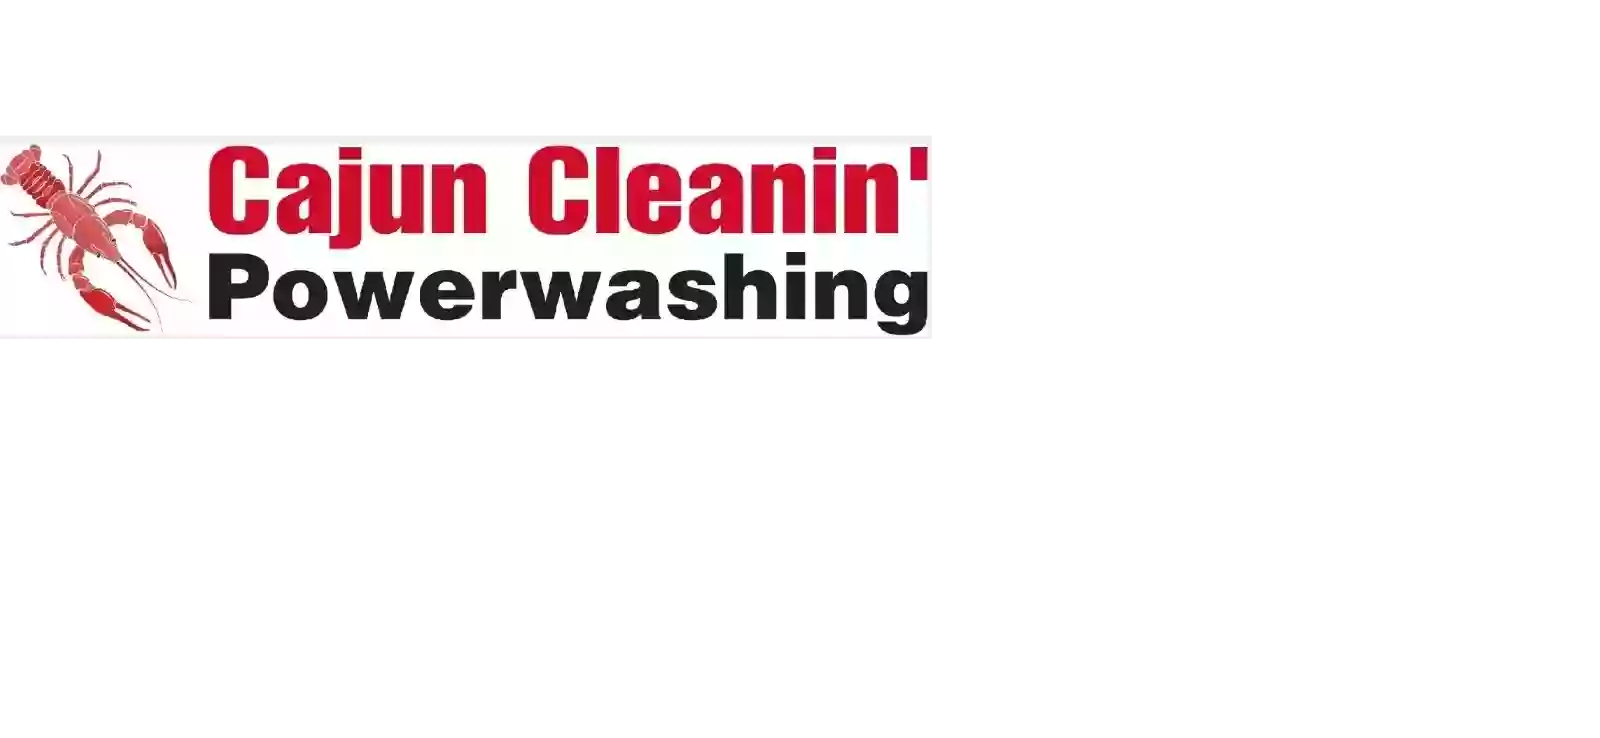 Cajun Cleanin powerwashing